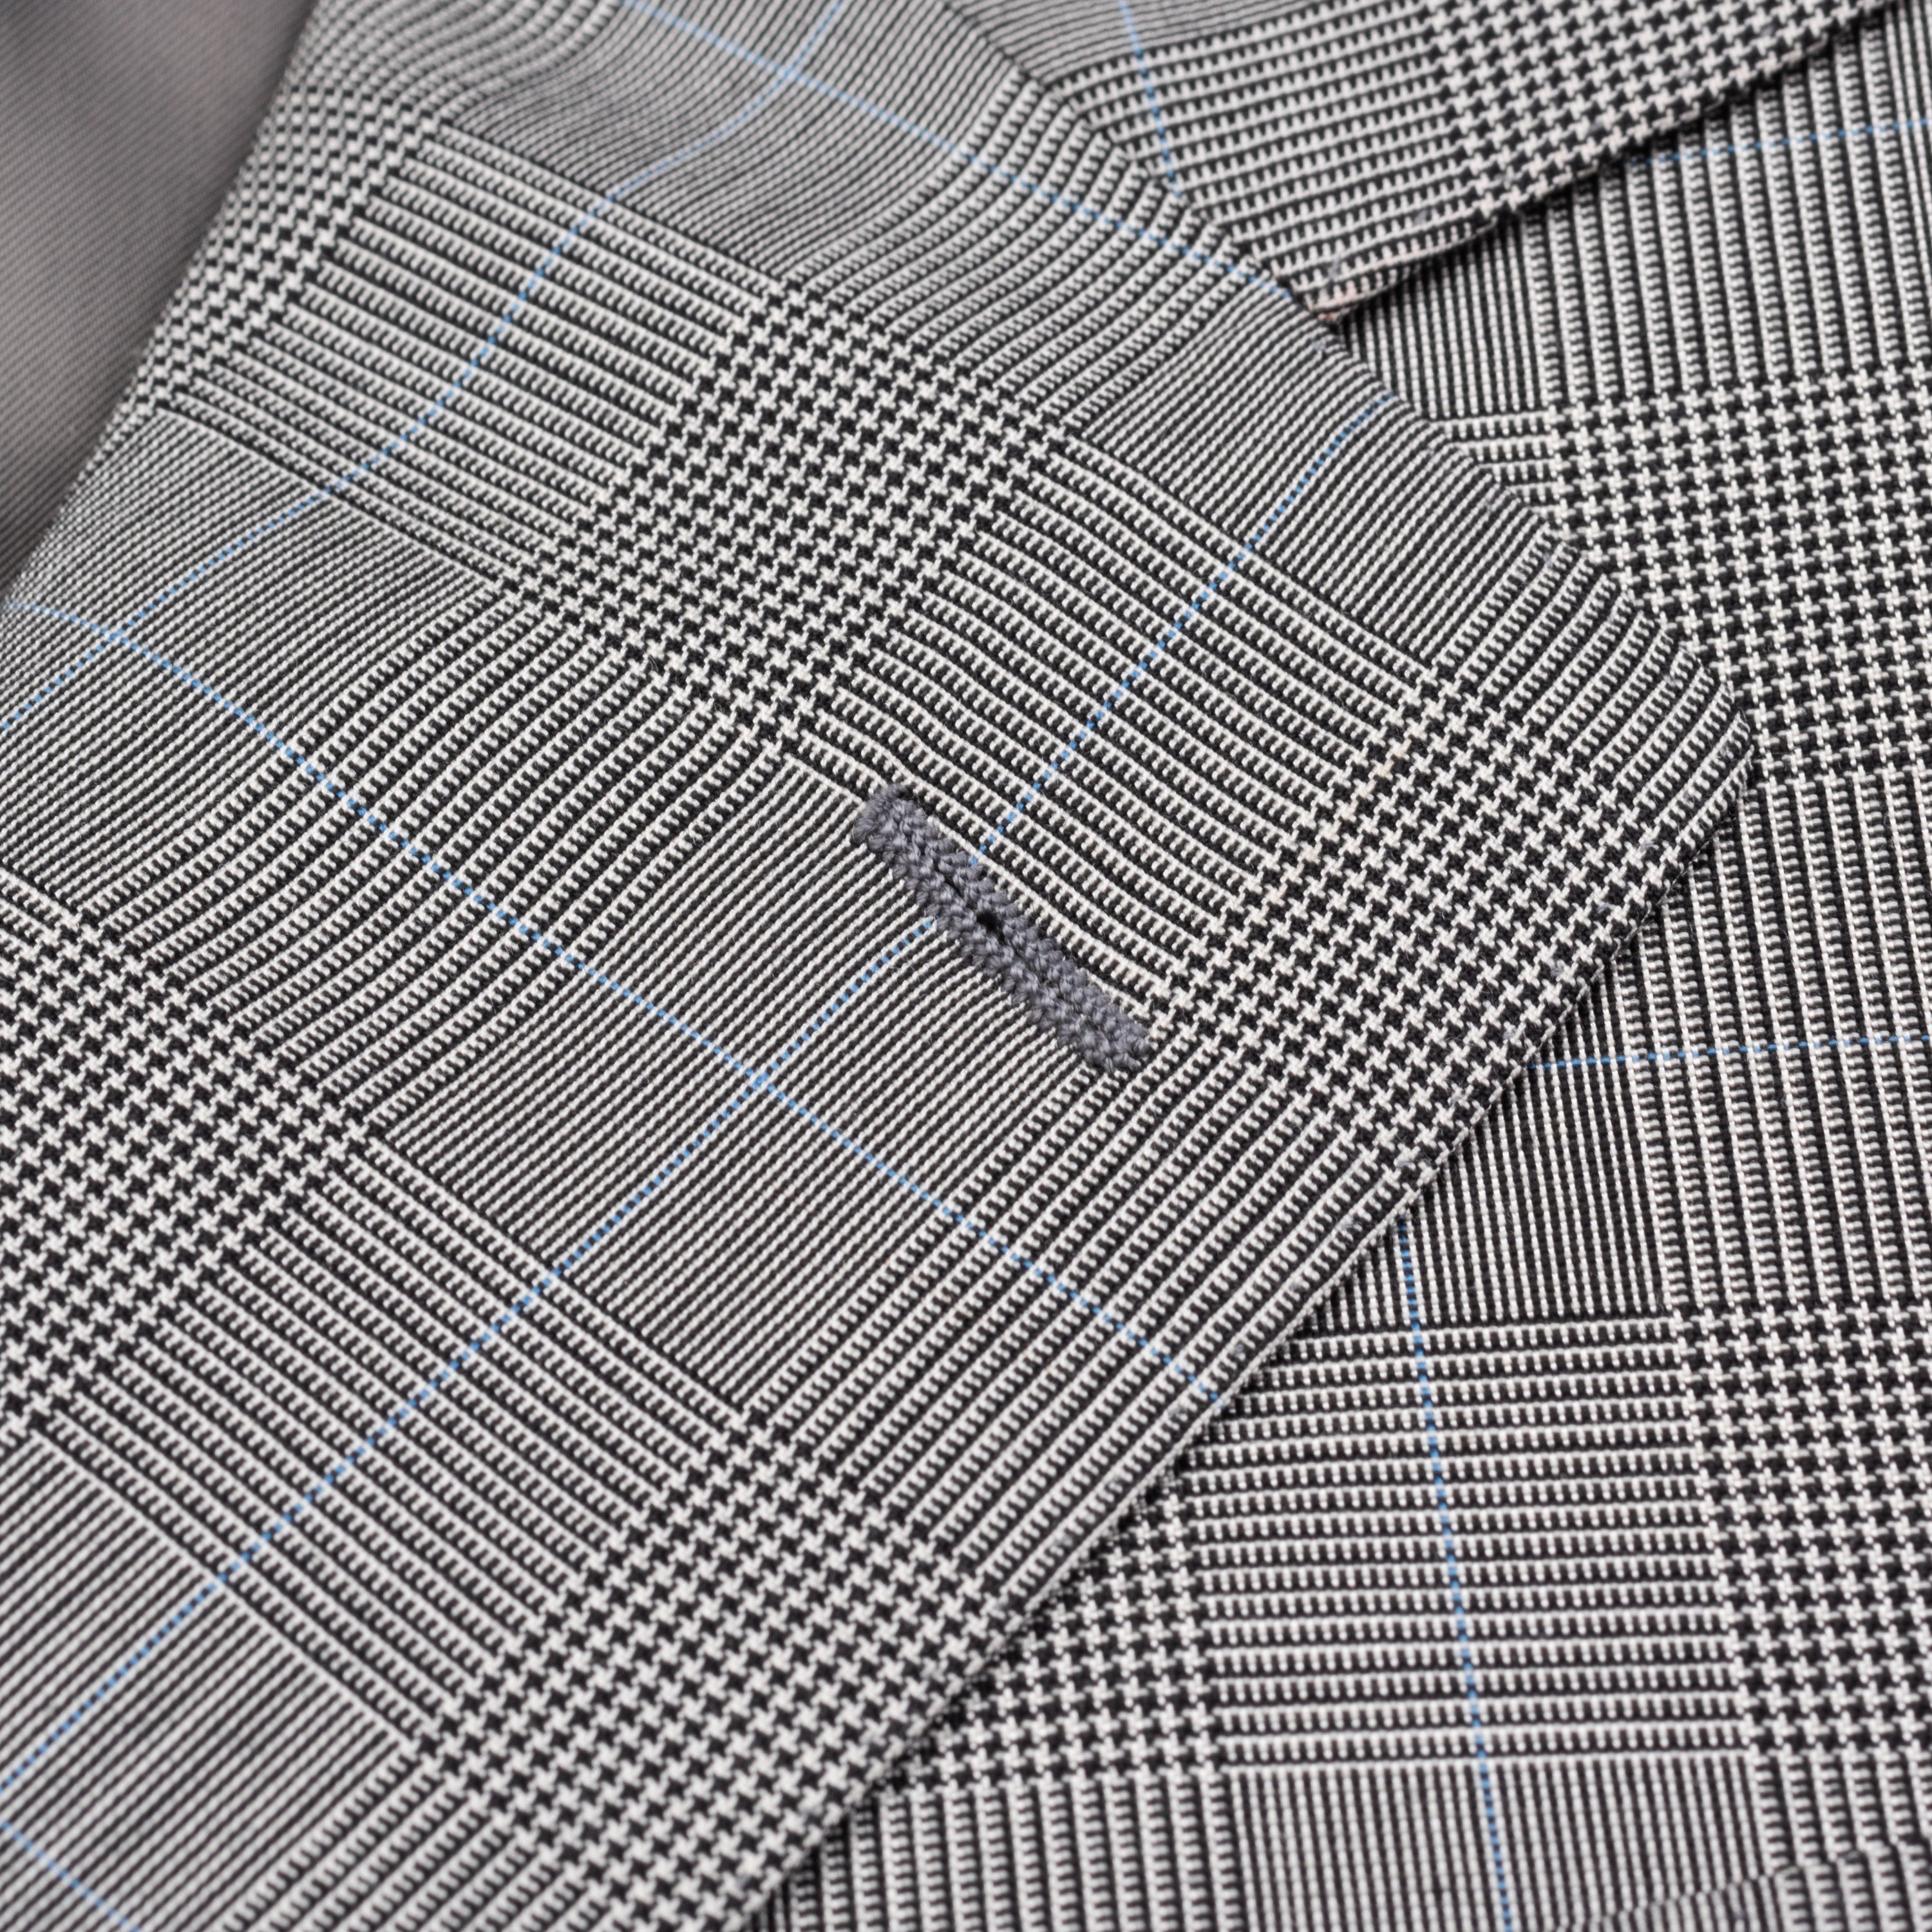 SARTORIA CASTANGIA Handmade Gray Plaid Wool-Silk Suit EU 48 NEW US 38 CASTANGIA